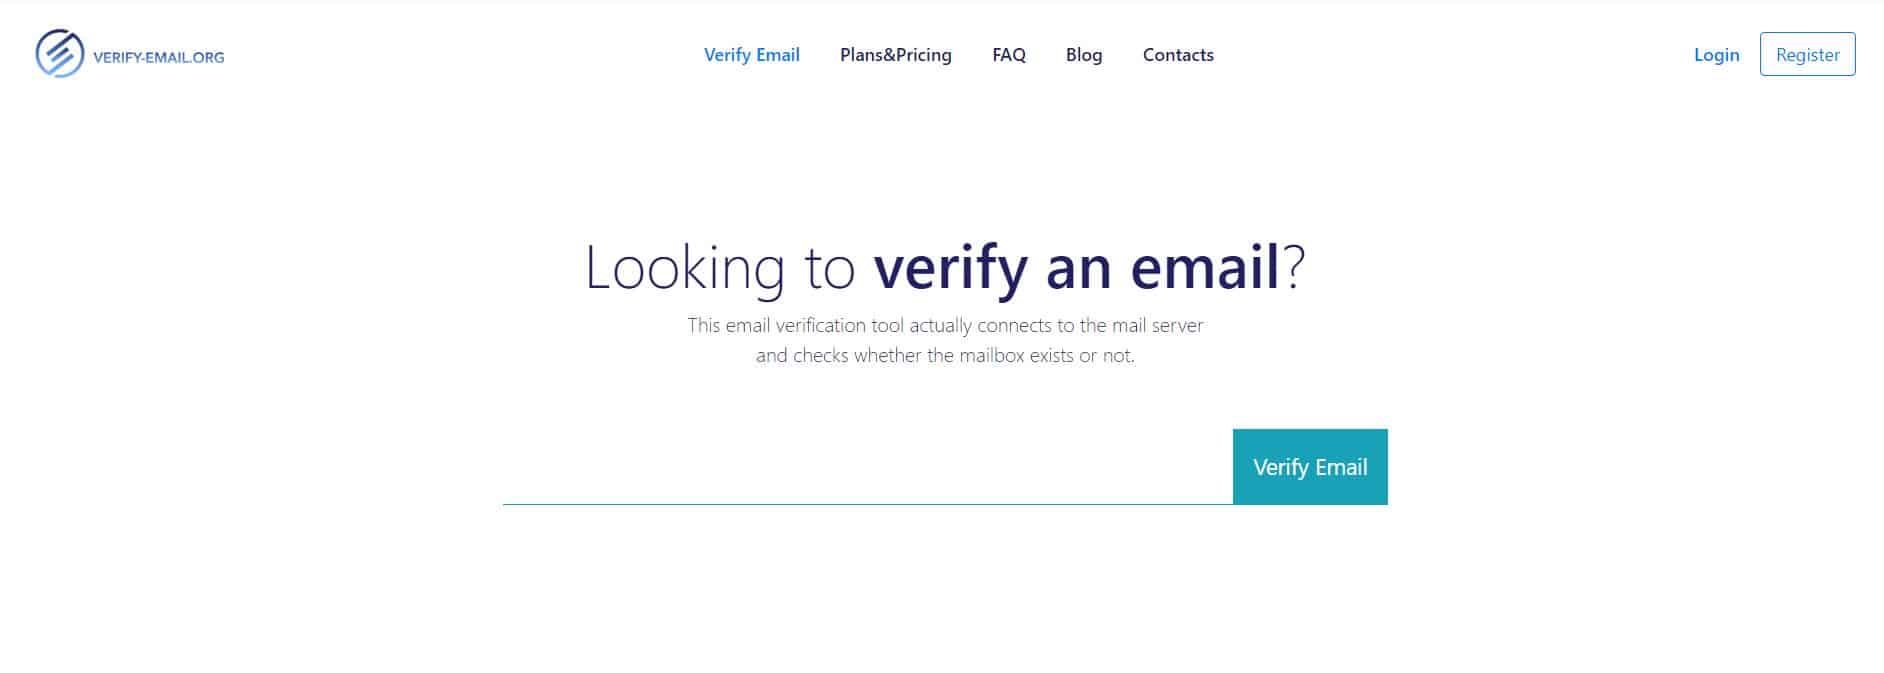 bulk email verifier for free